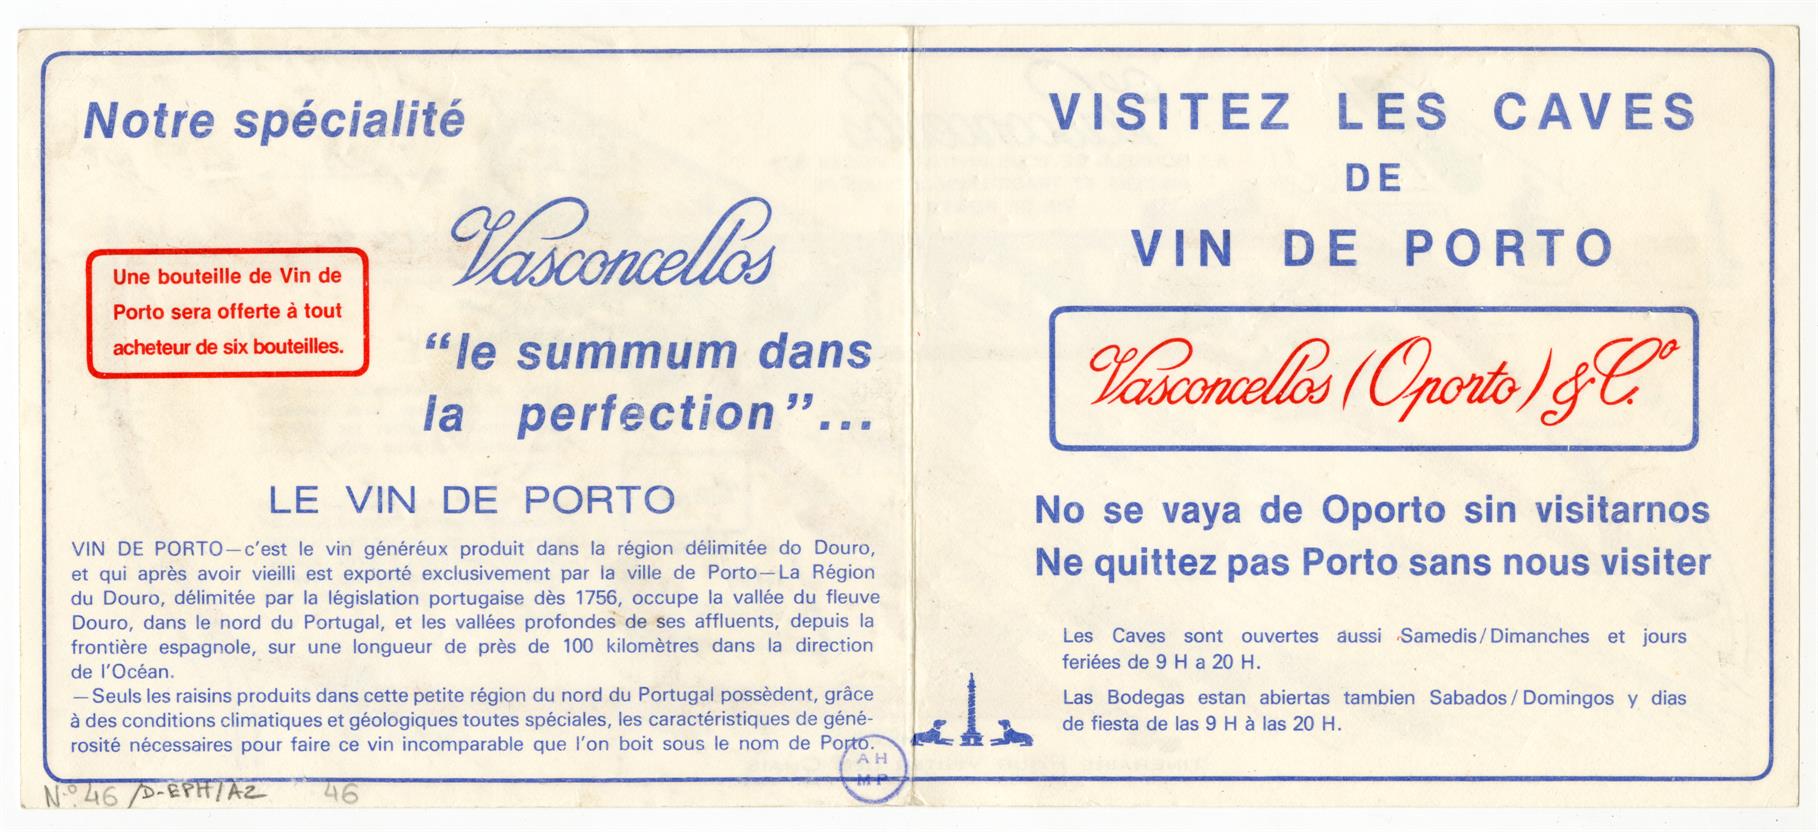 Visitez les caves de vin de Porto Vasconcelos & Co.